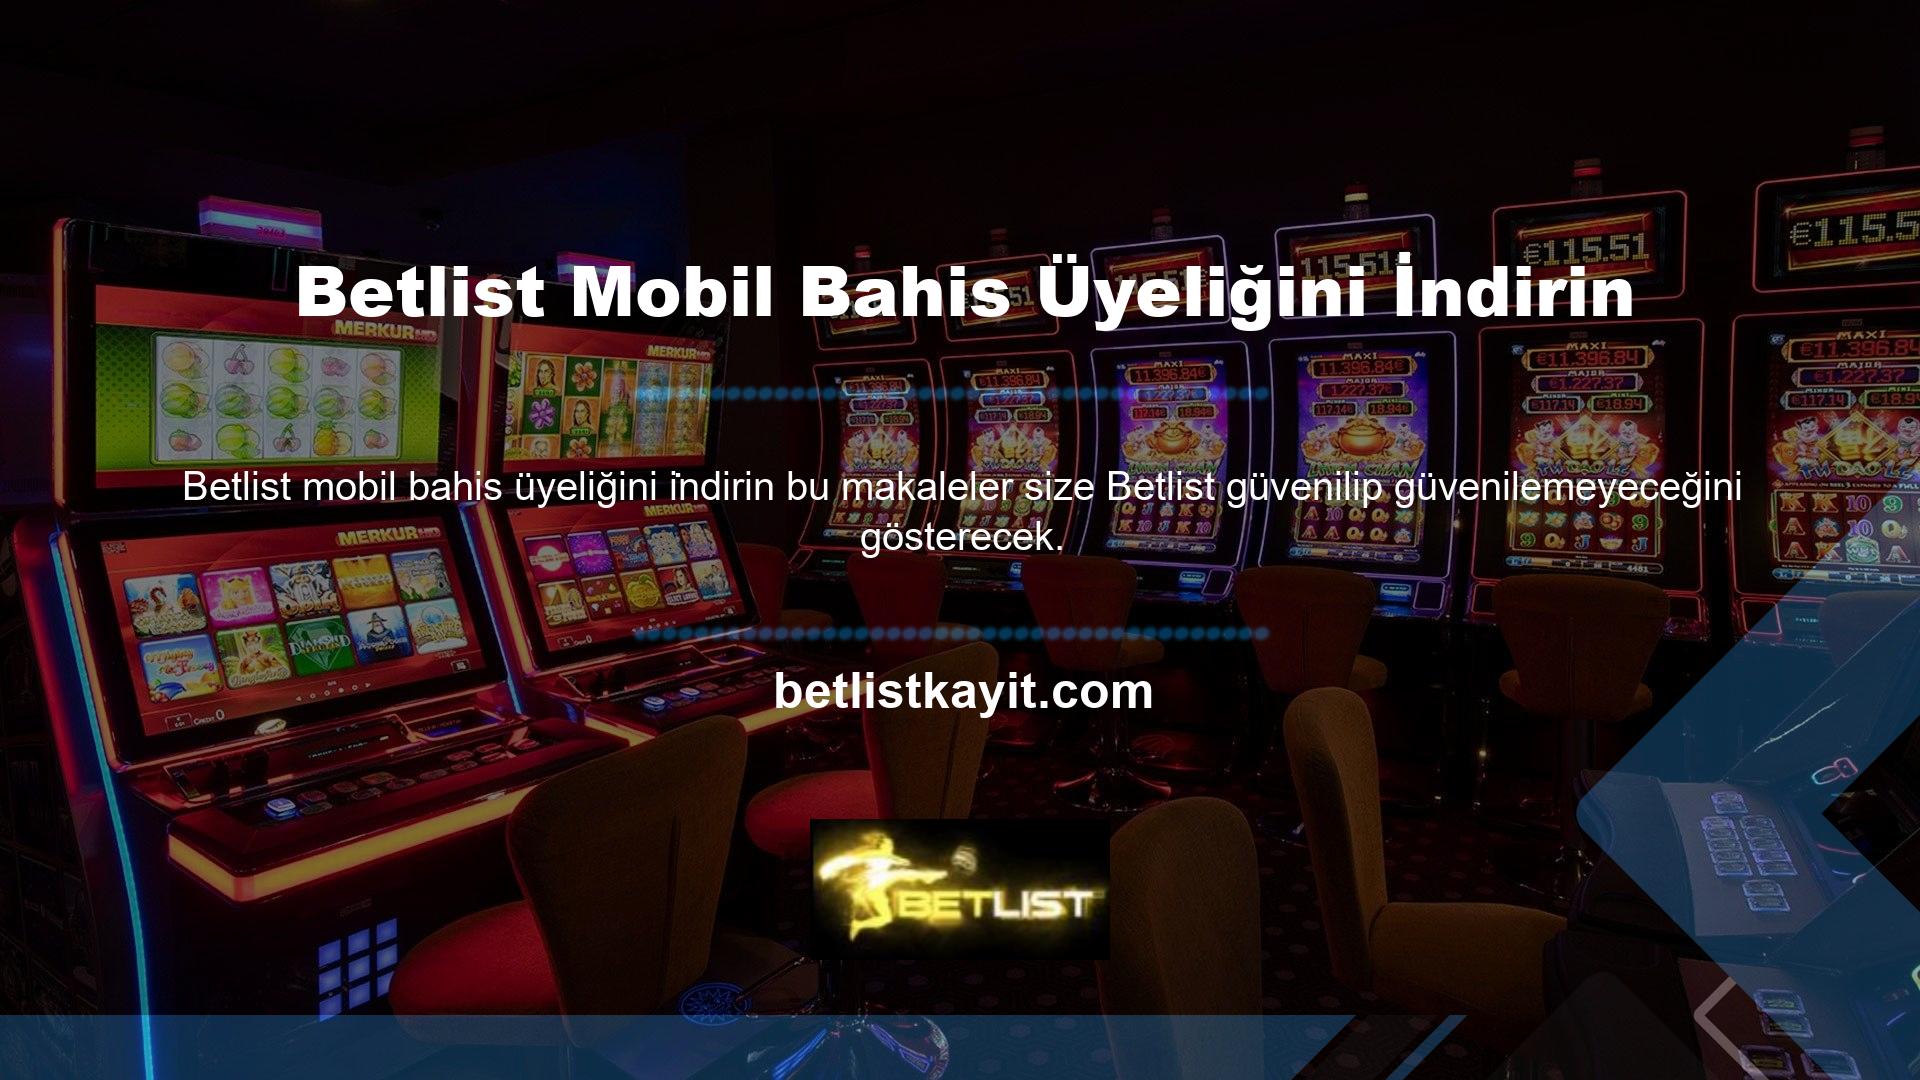 Son olarak, casino topluluğunda rulet gibi sorgulamalar yaparken nelere dikkat etmeniz gerektiğini ve mobil bahis için Betlist üyeliğini nasıl indireceğinizi öğreneceksiniz